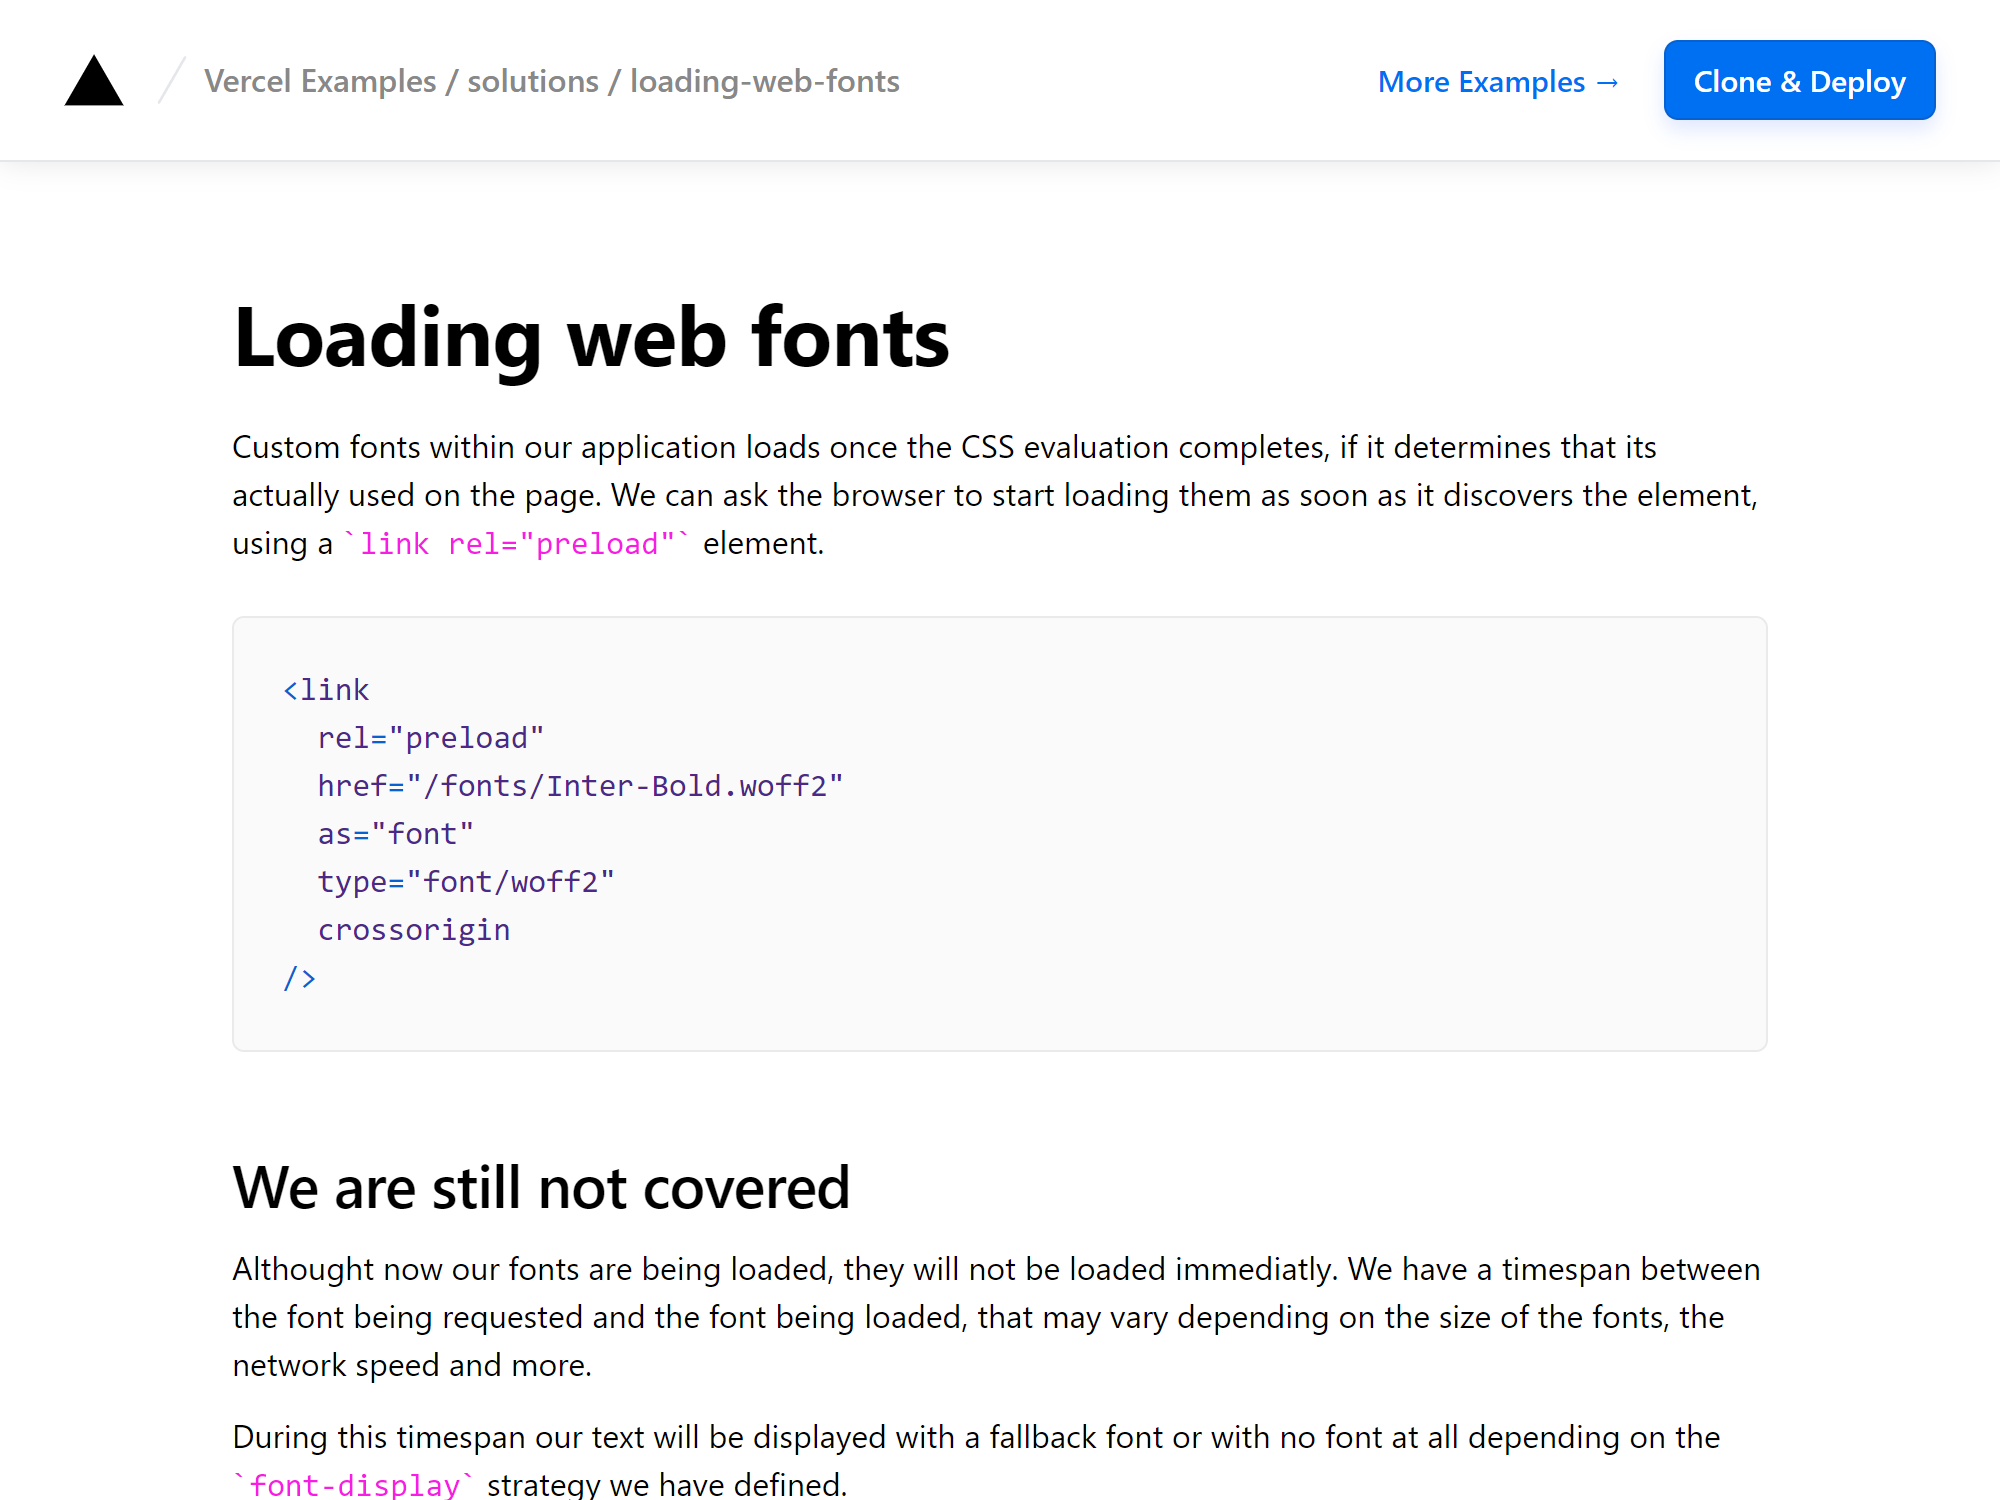 Handling custom web fonts